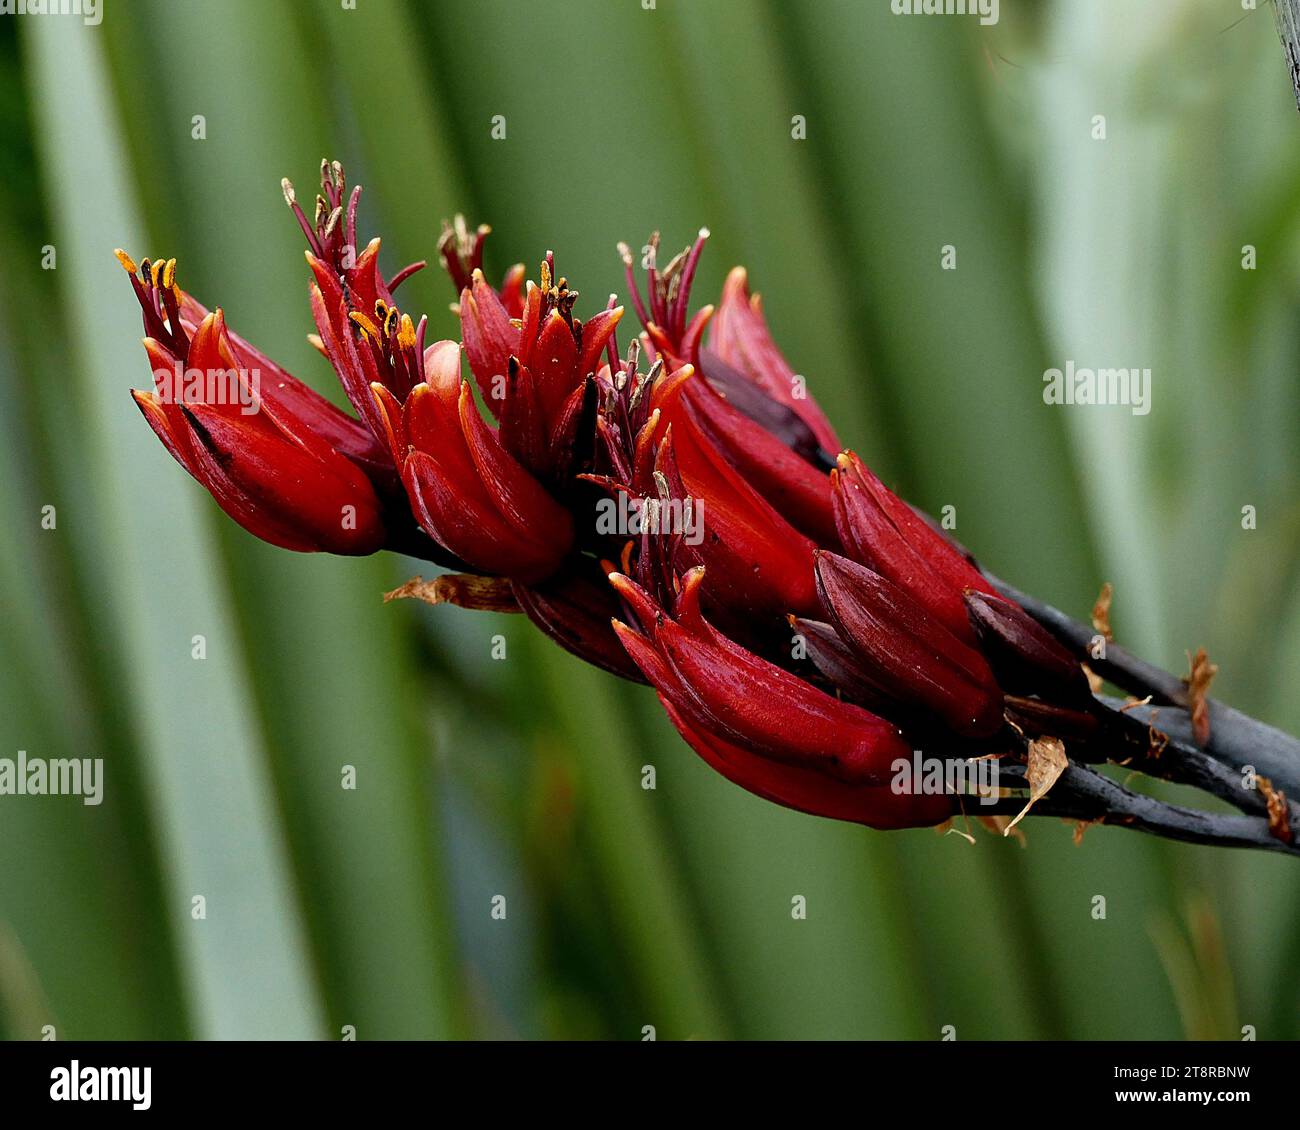 Phormium Tenax. NZ Flachs, Neuseeland Flachs ist eine der markantesten einheimischen Pflanzen in der Region. Er hat schwertförmige Blätter, die 1 bis 3 Meter lang sind und fächerförmig wachsen. Im Frühjahr strömen Vögel – insbesondere tūī –, um sich vom Nektar seiner röhrenförmigen Blüten zu ernähren, die auf bis zu 4,5 Meter langen Stämmen blühen. Durch den Transport von Pollen von Pflanze zu Pflanze helfen die Vögel, Flachs in langen Schoten Samen zu produzieren Stockfoto